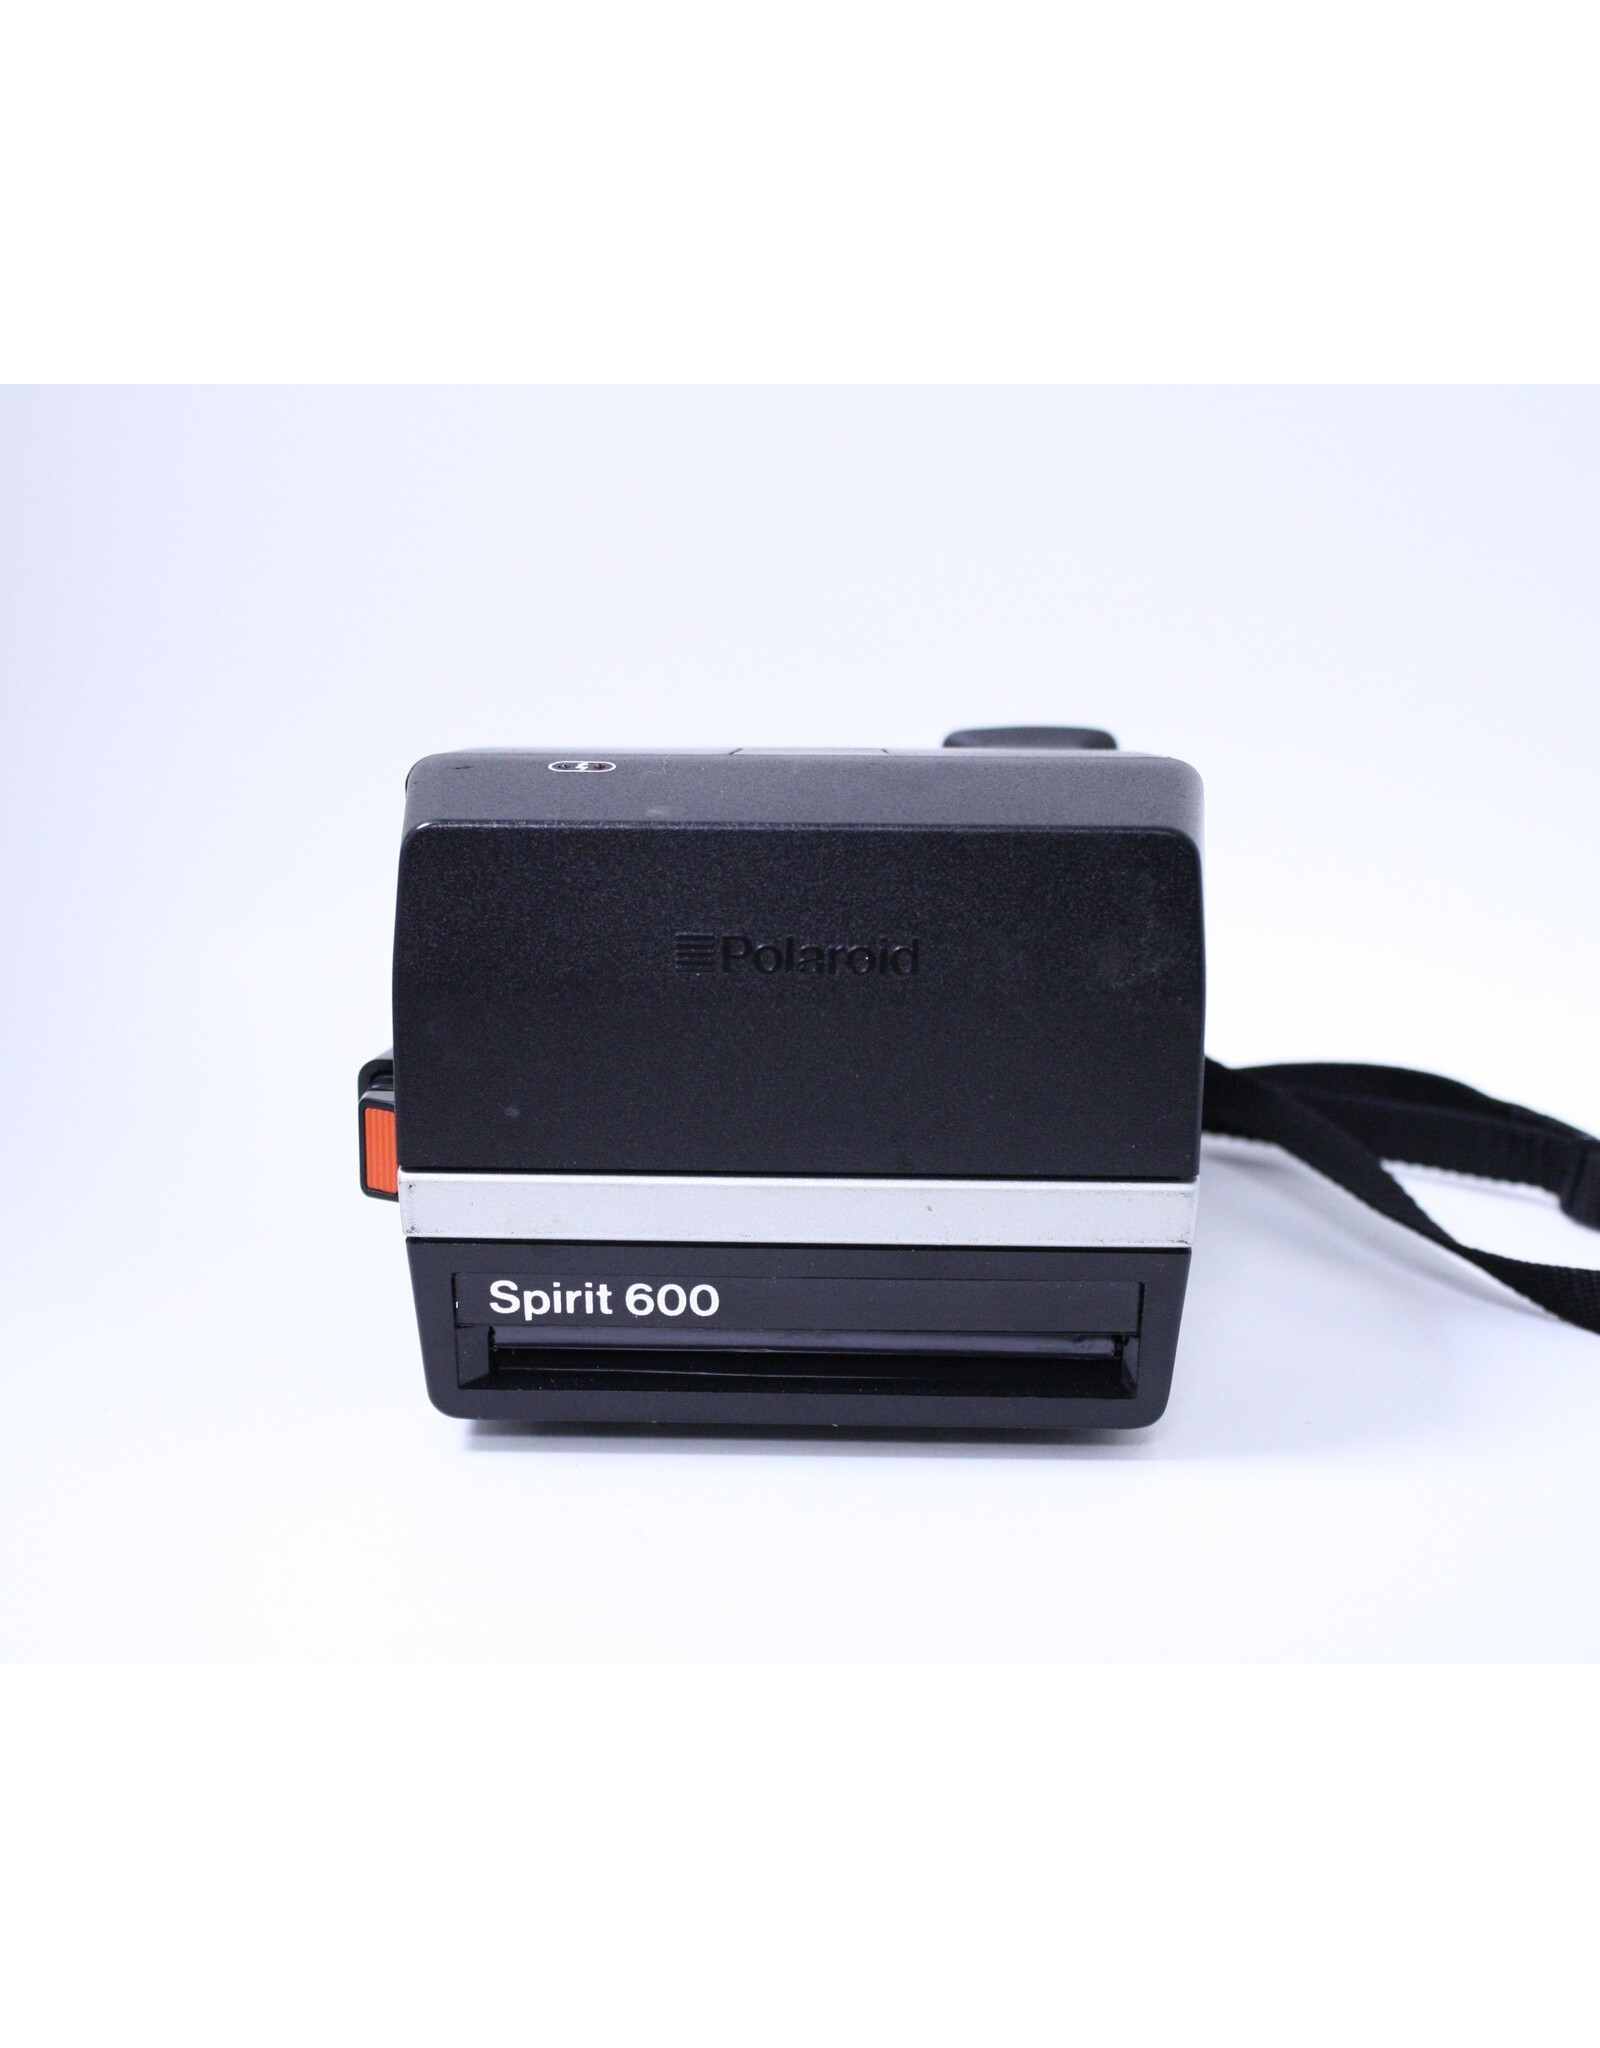 Polaroid Spirit 600 Instant Film Camera (Pre-owned)